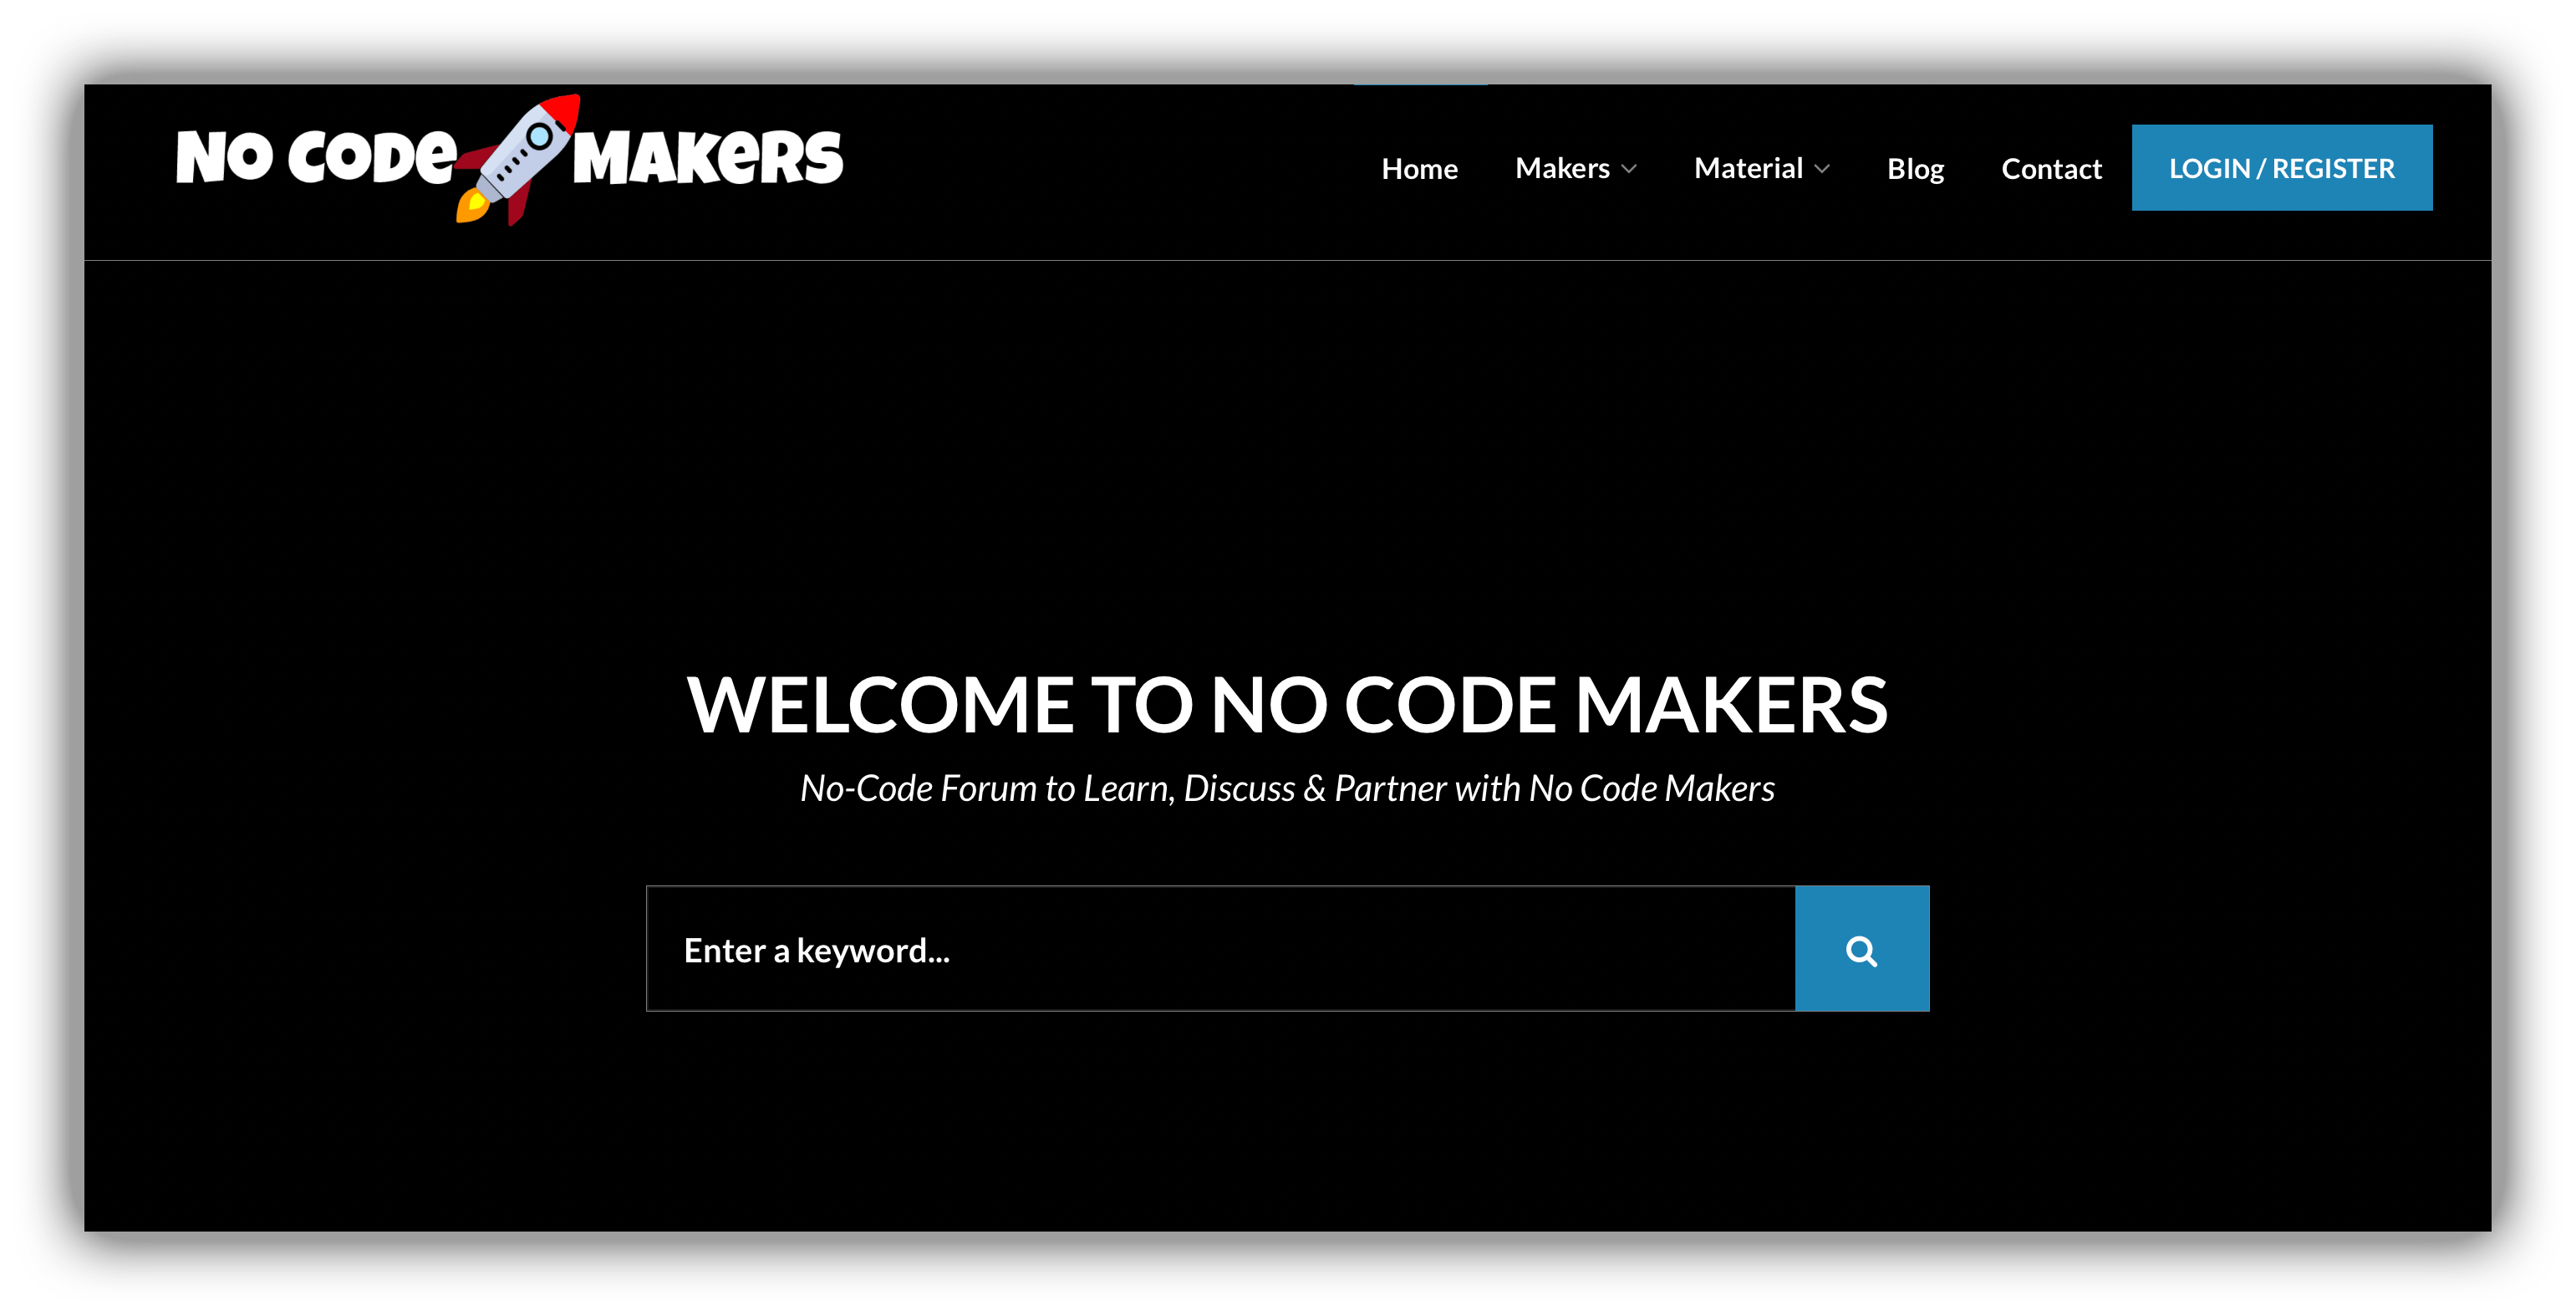 No Code makers